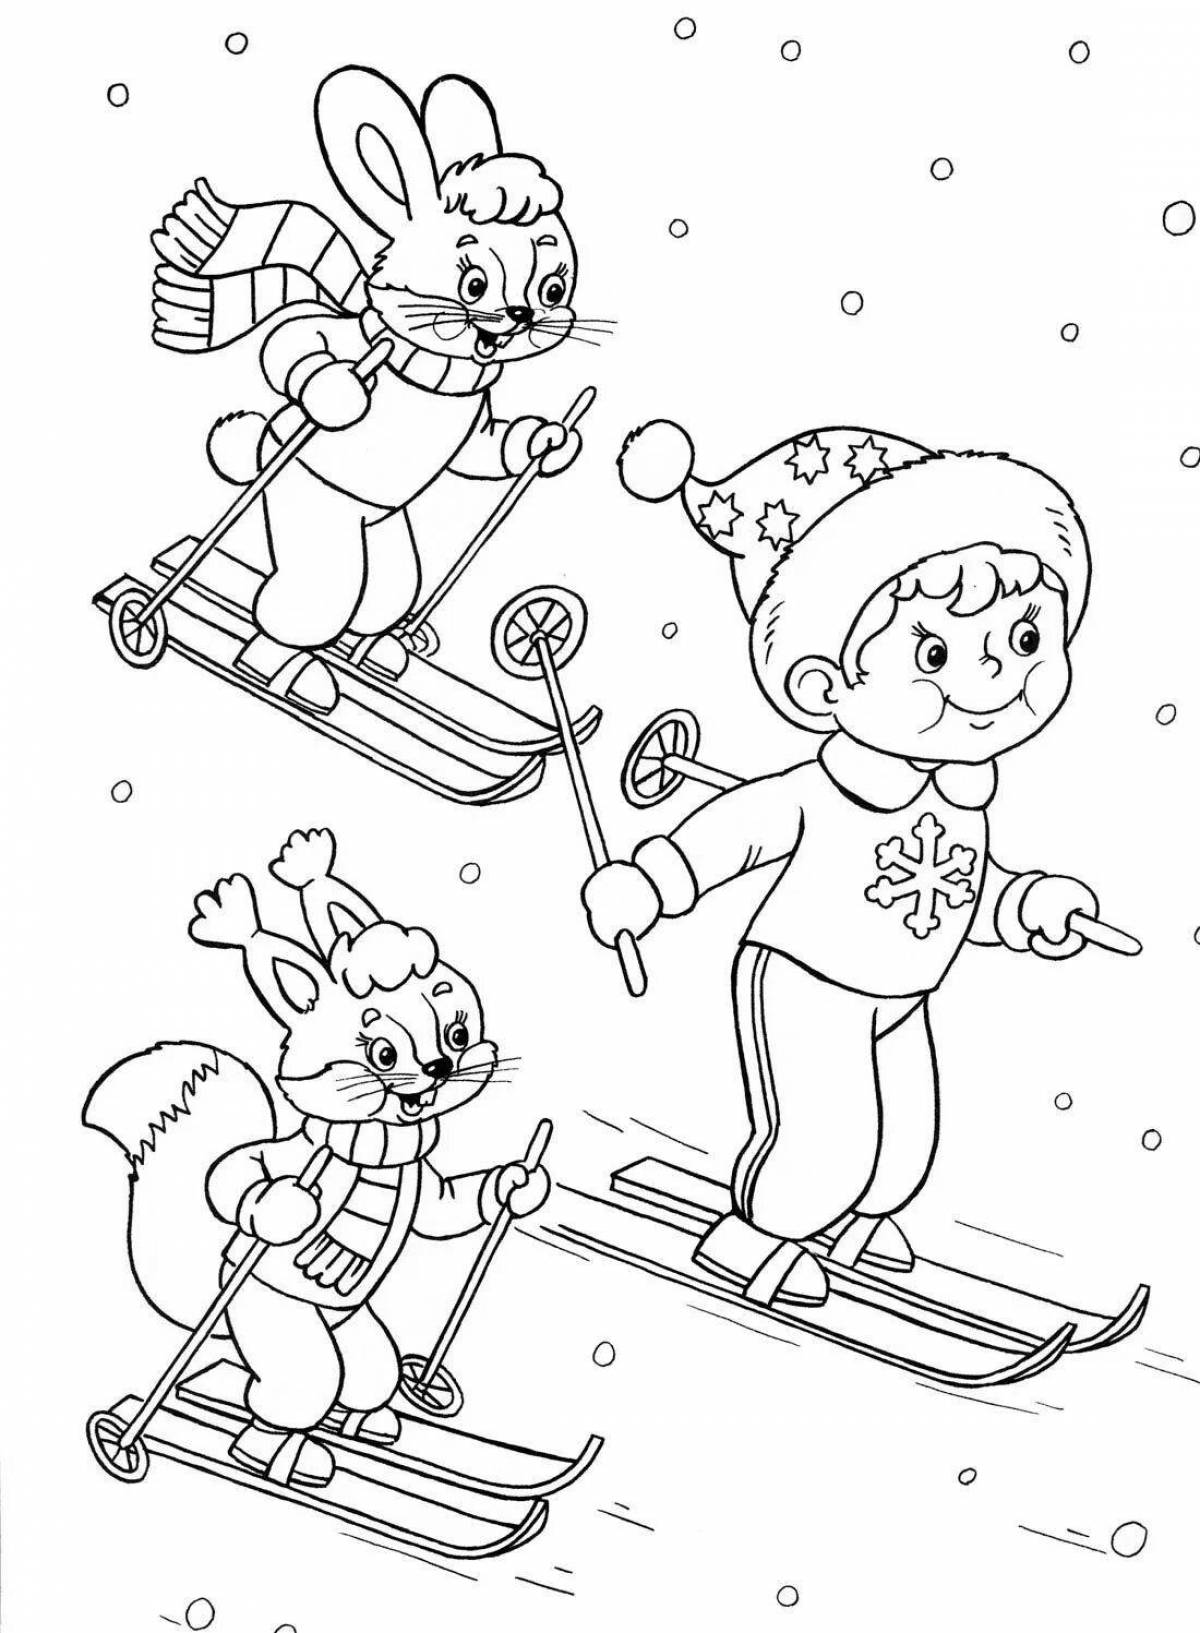 Увлекательная раскраска лыжника для детей